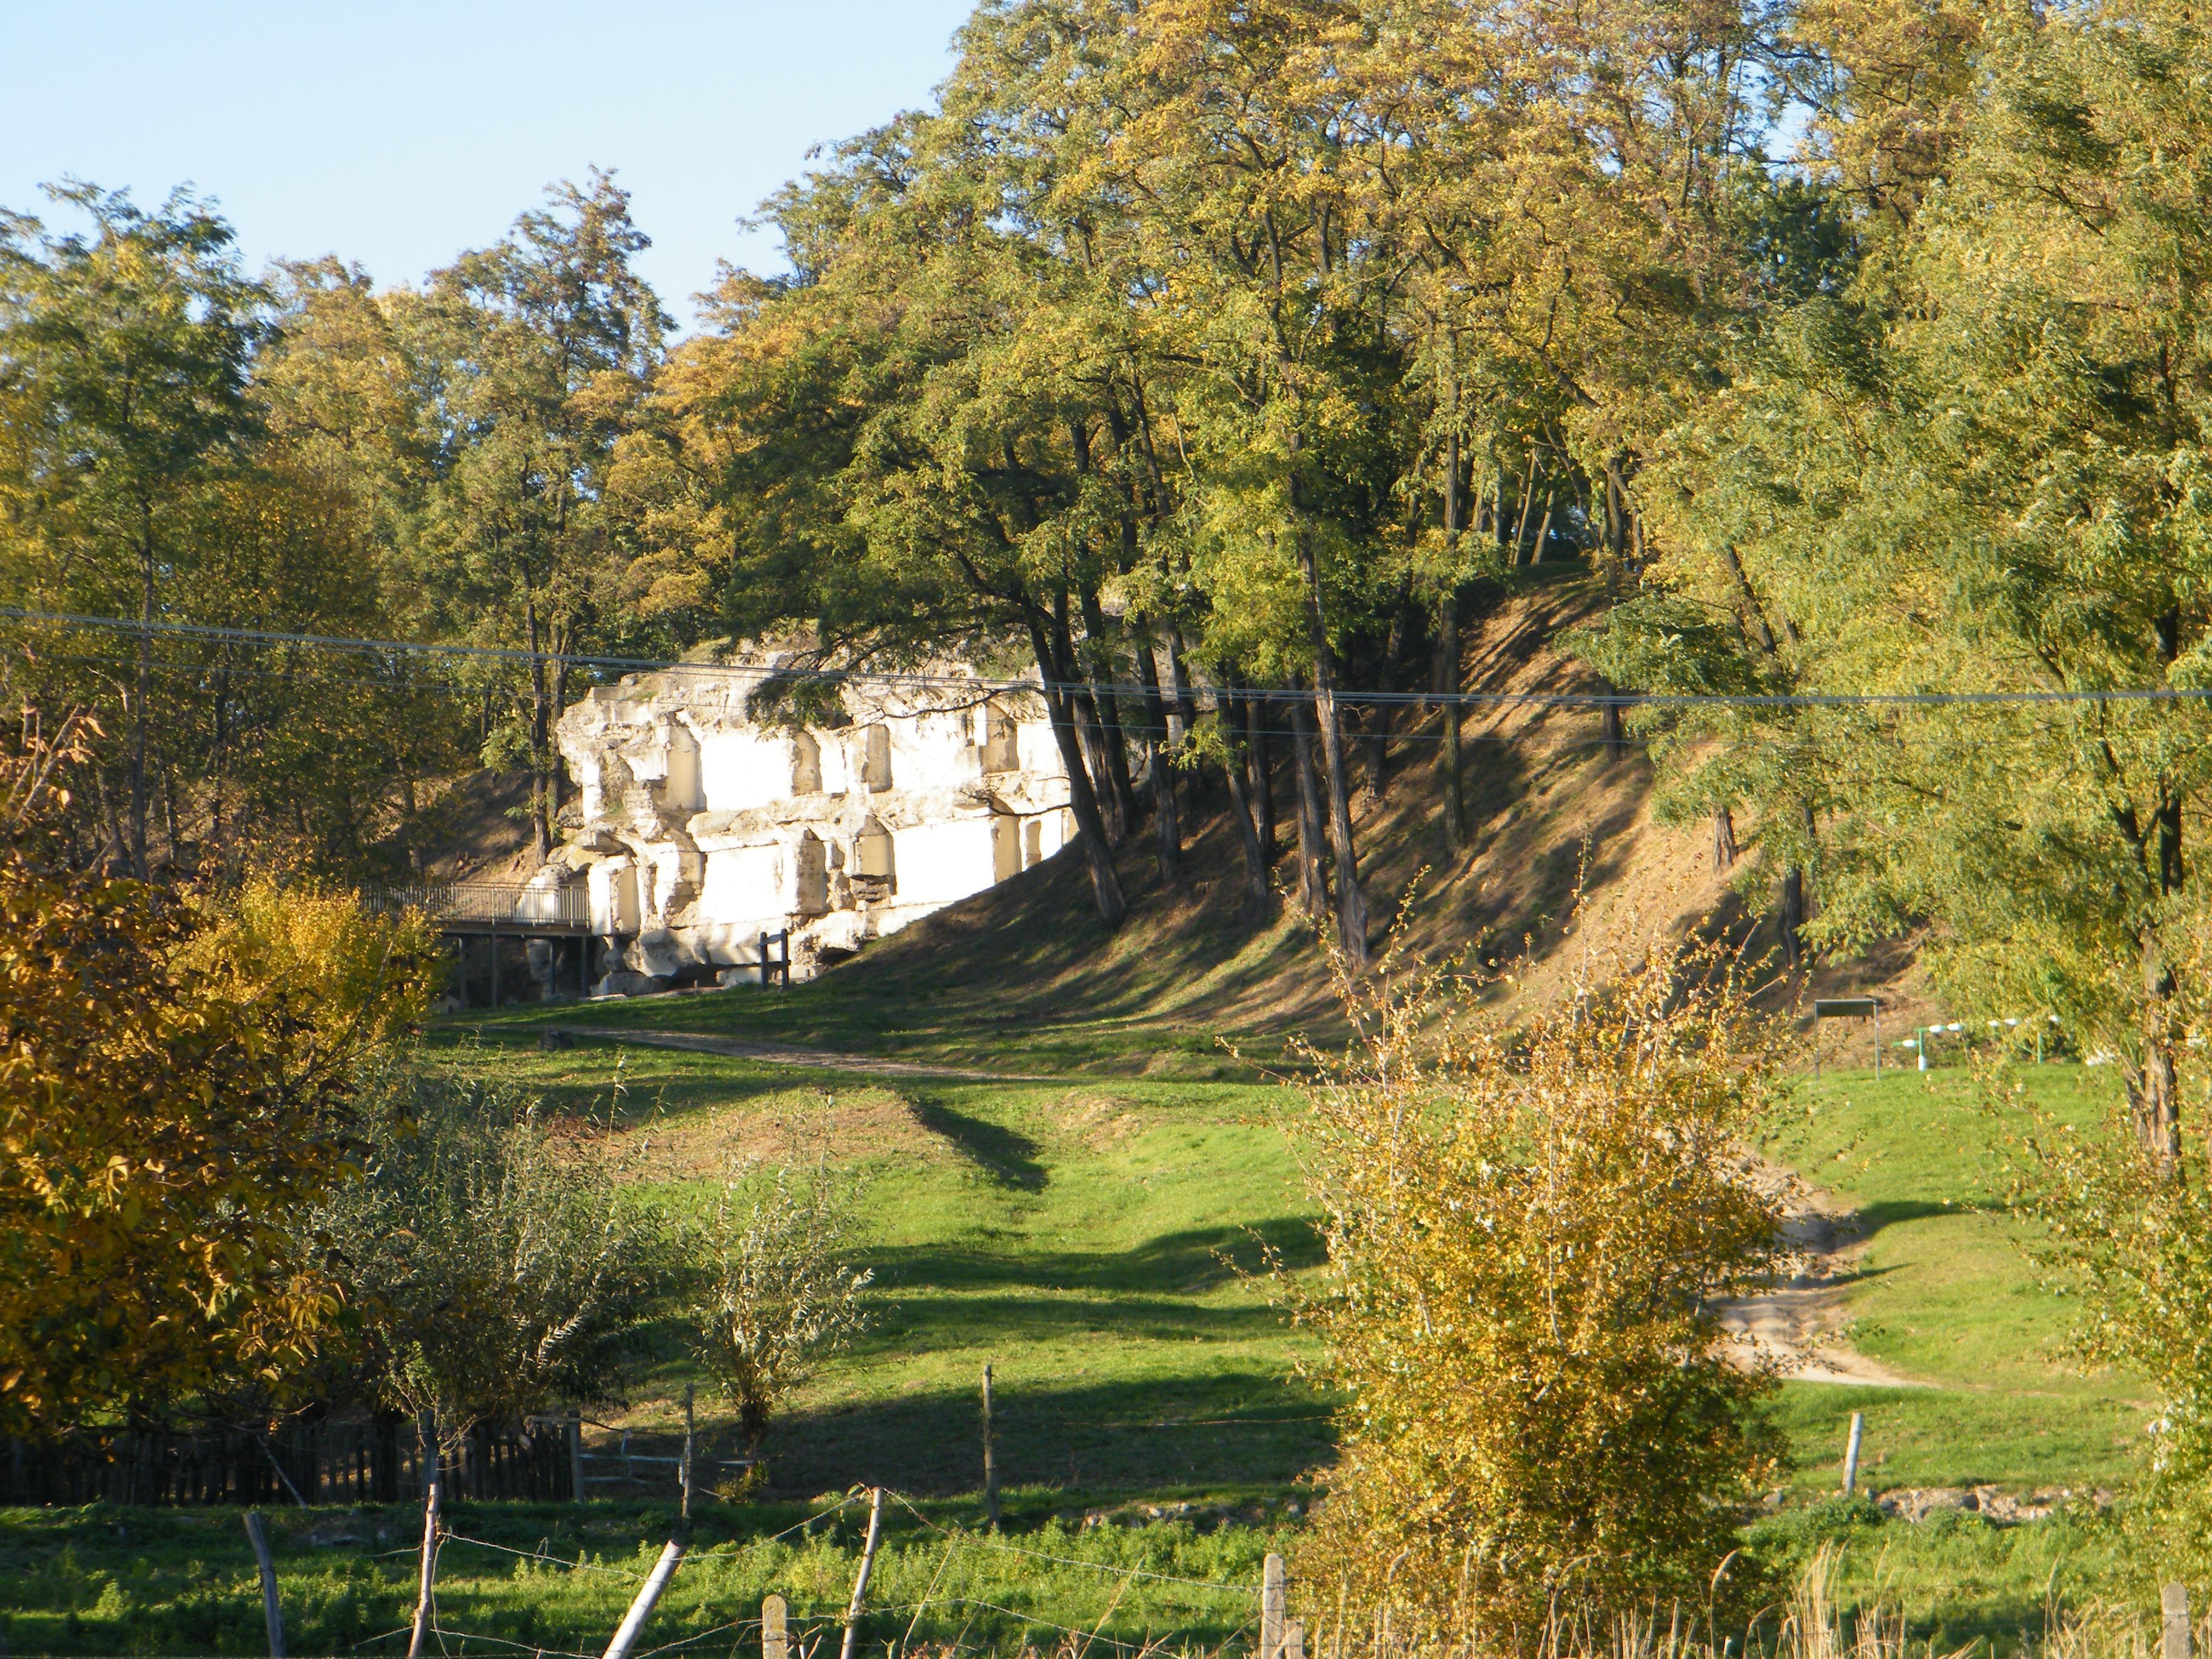 A XIII. erőd, a San Rideau. A sáncokat és külső védműveket teljesen benőtte az erőd fénykorának idején gondosan irtott növényzet